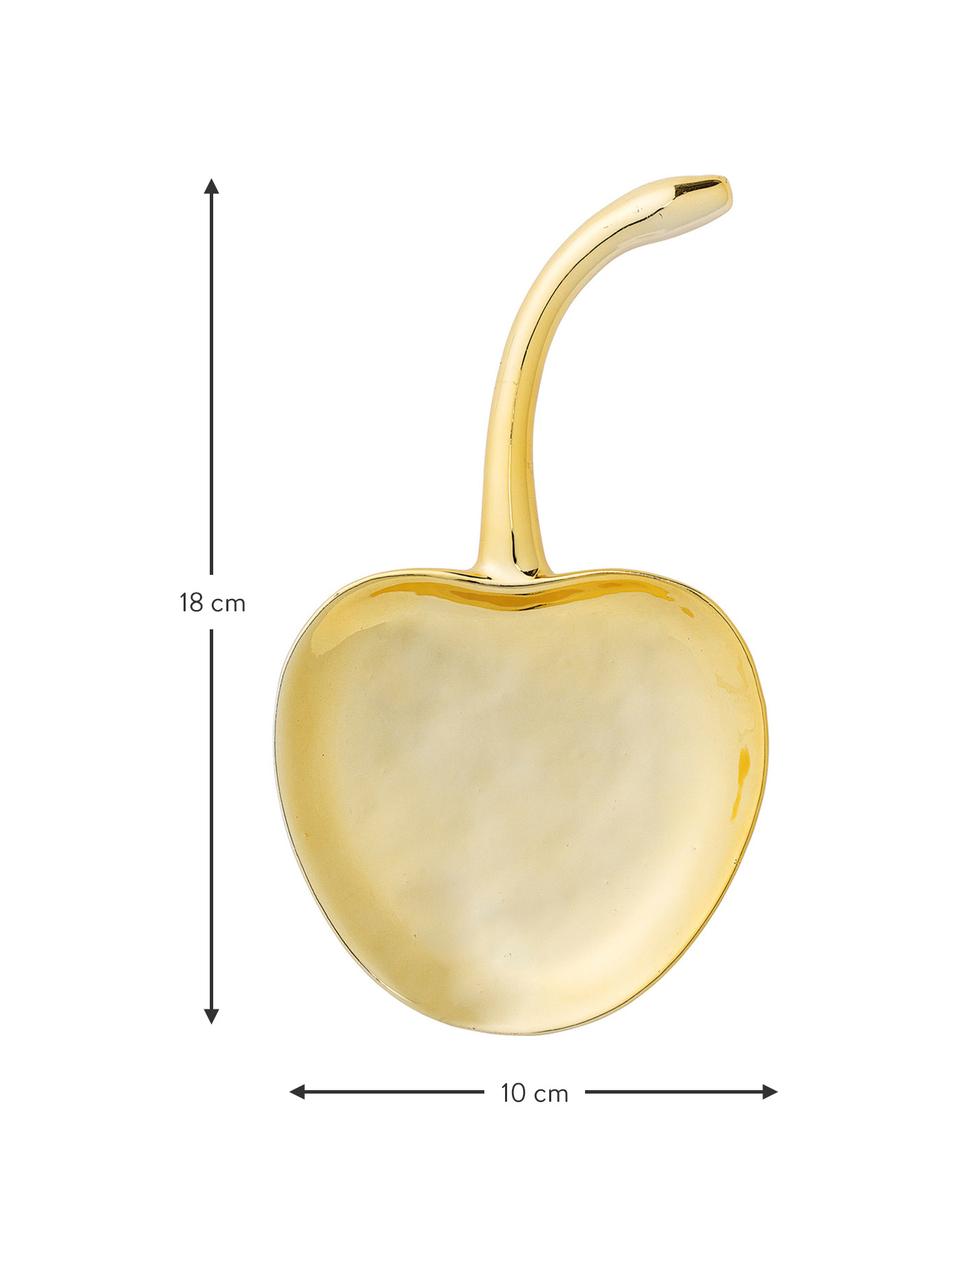 Deko-Schale Cherry, B 18 cm, Steingut, Goldfarben, B 18 x T 10 cm